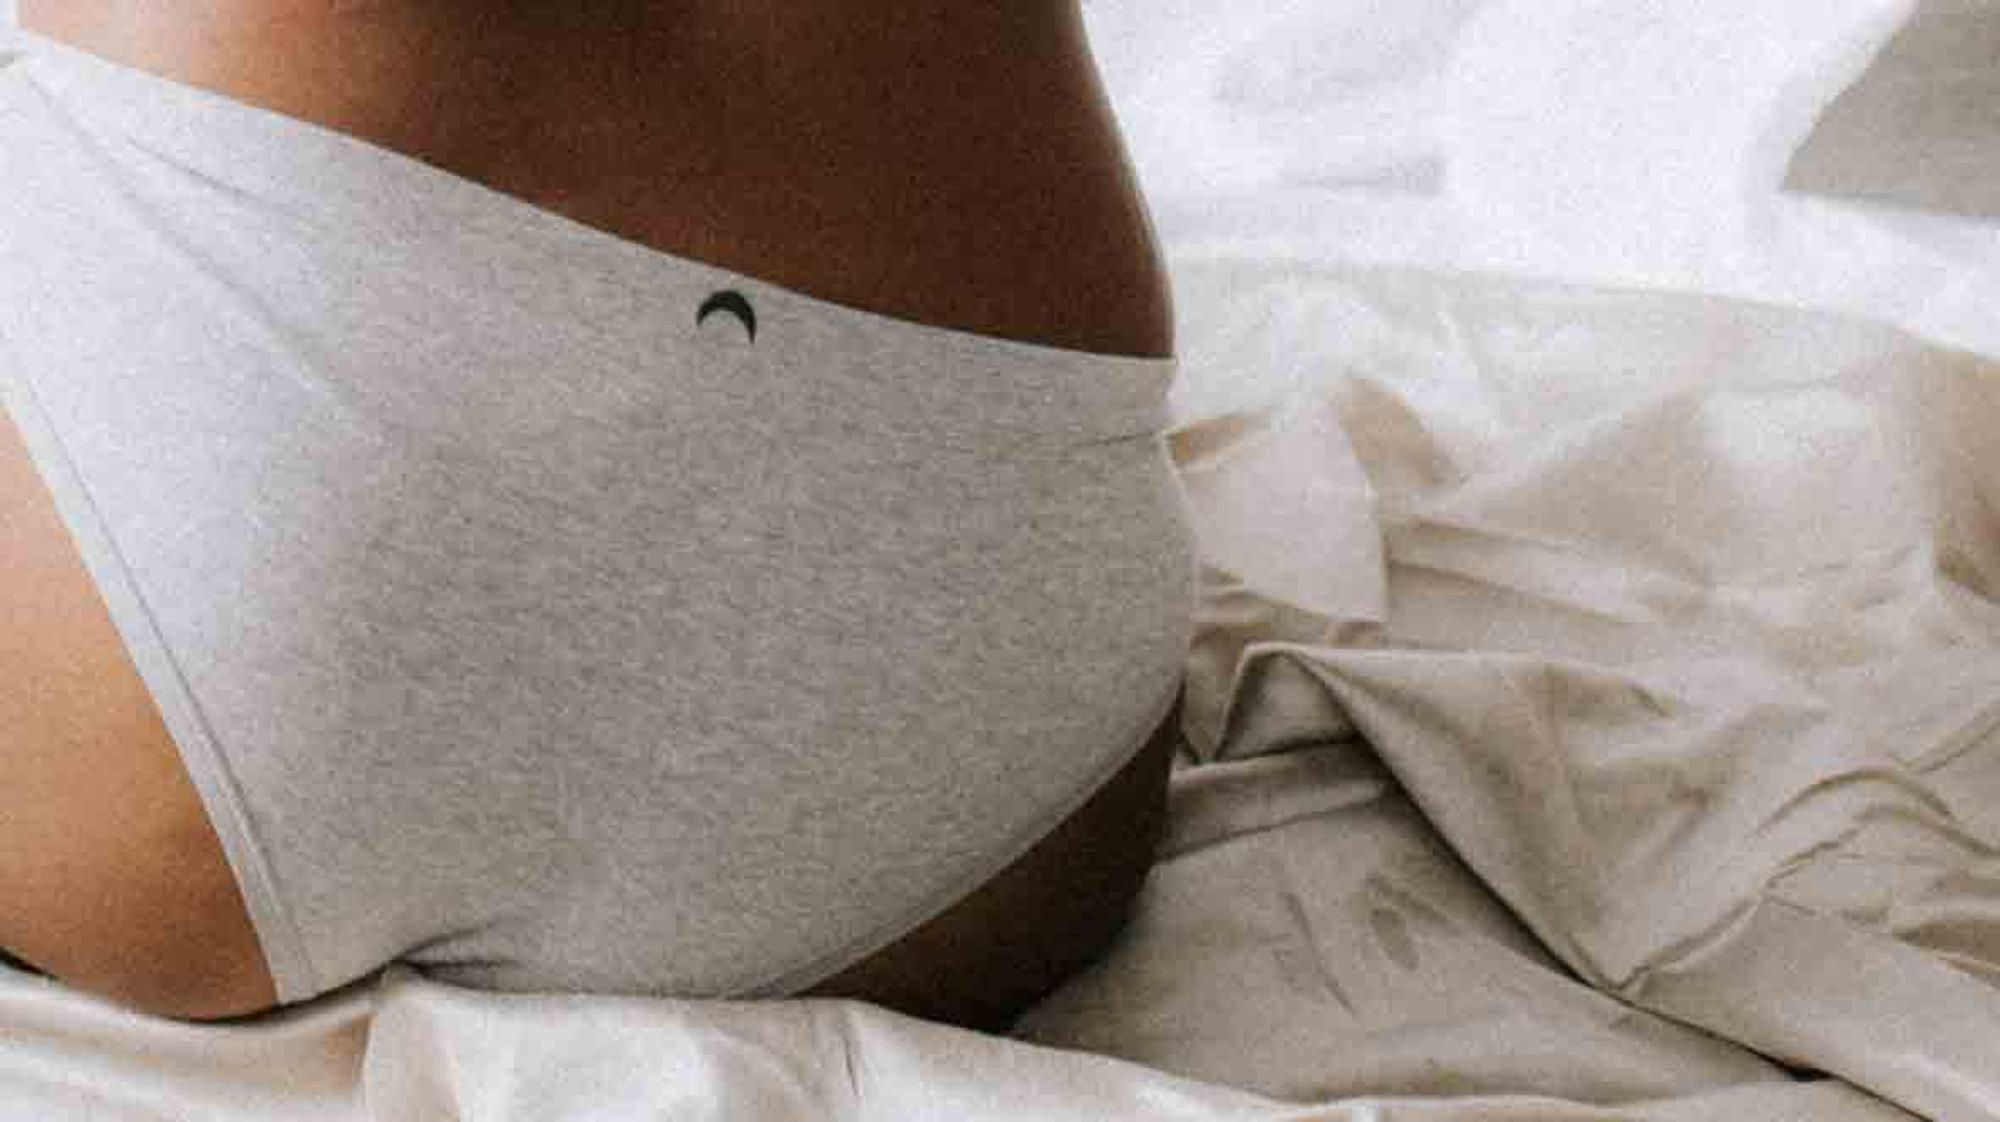 Schwangerschaft in brauner ausfluss Ausfluss riecht: